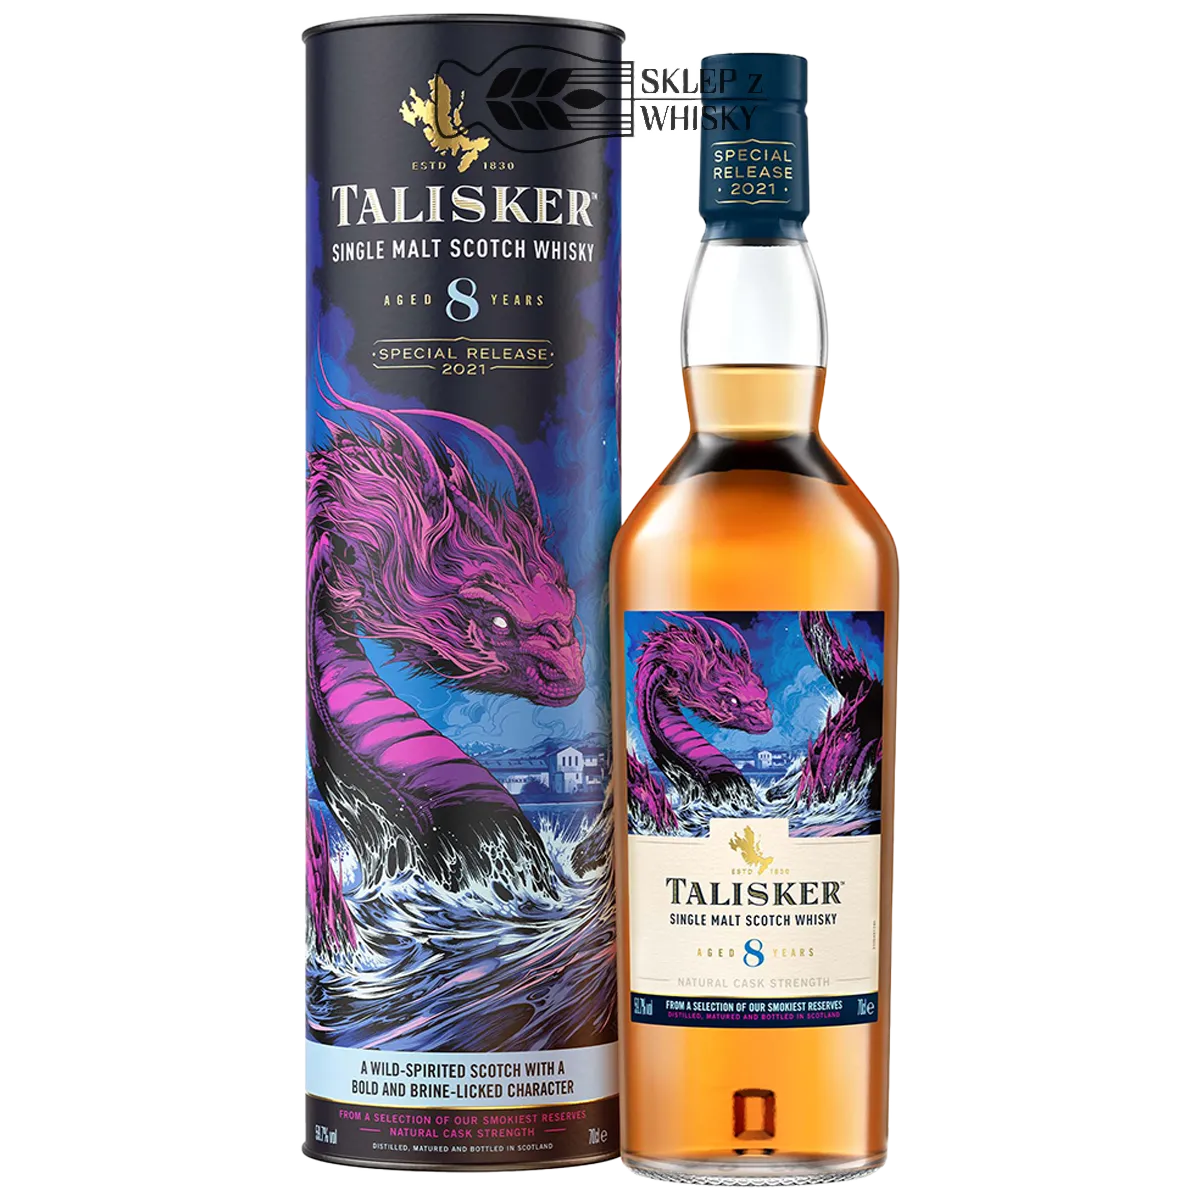 Talisker 8-letni Diageo Special Release 2021 - Island single malt scotch whisky 700 ml w tubie